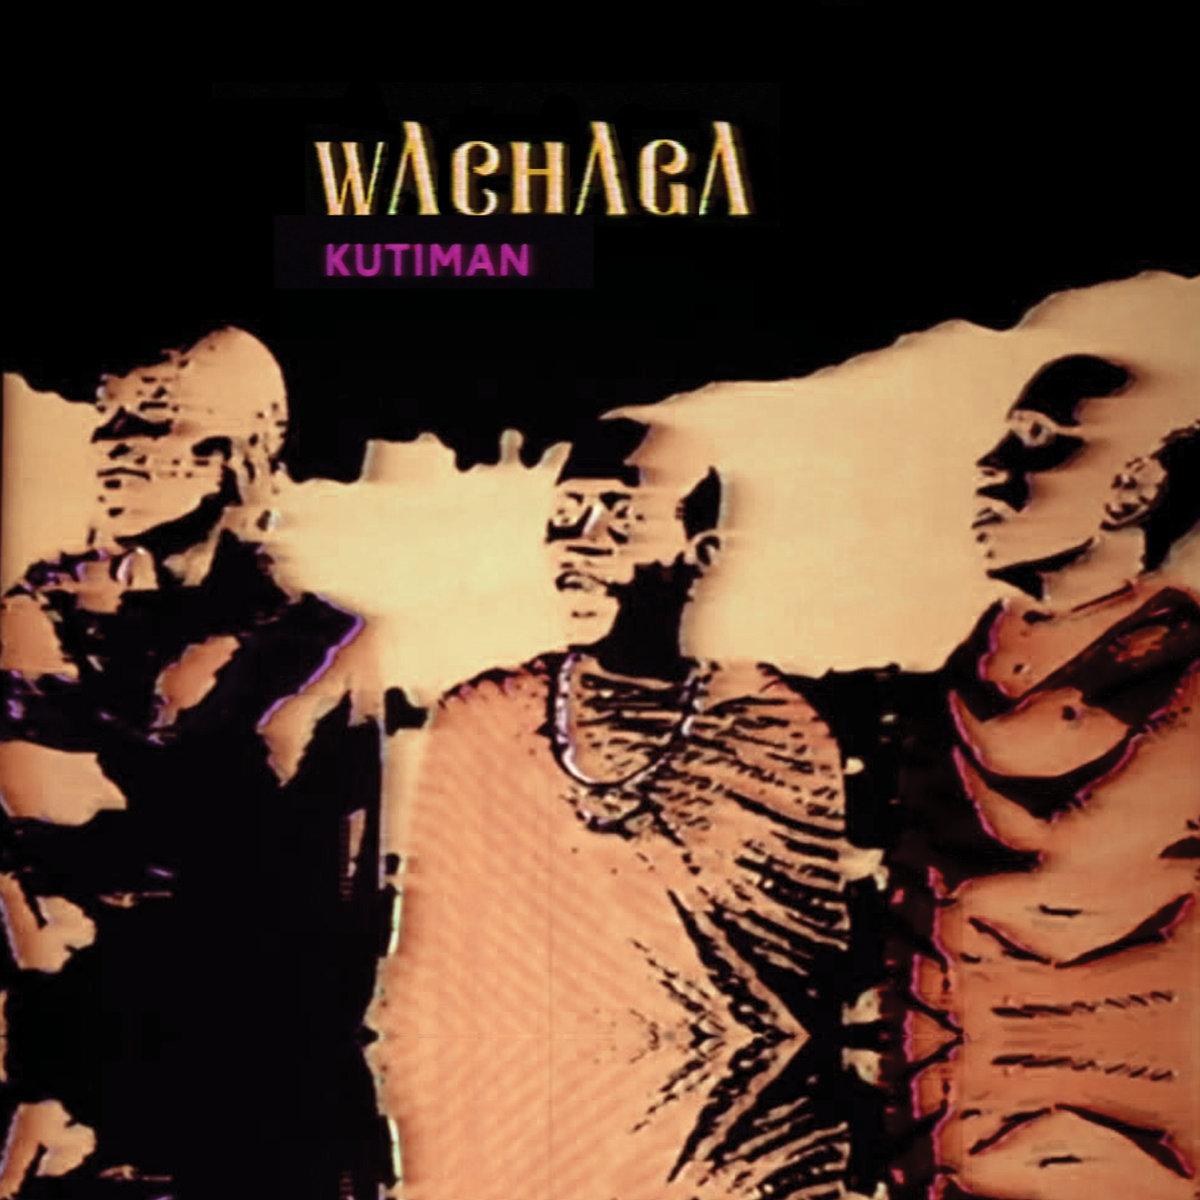 KUTIMAN - Wachaga (Splatter Vinyl)